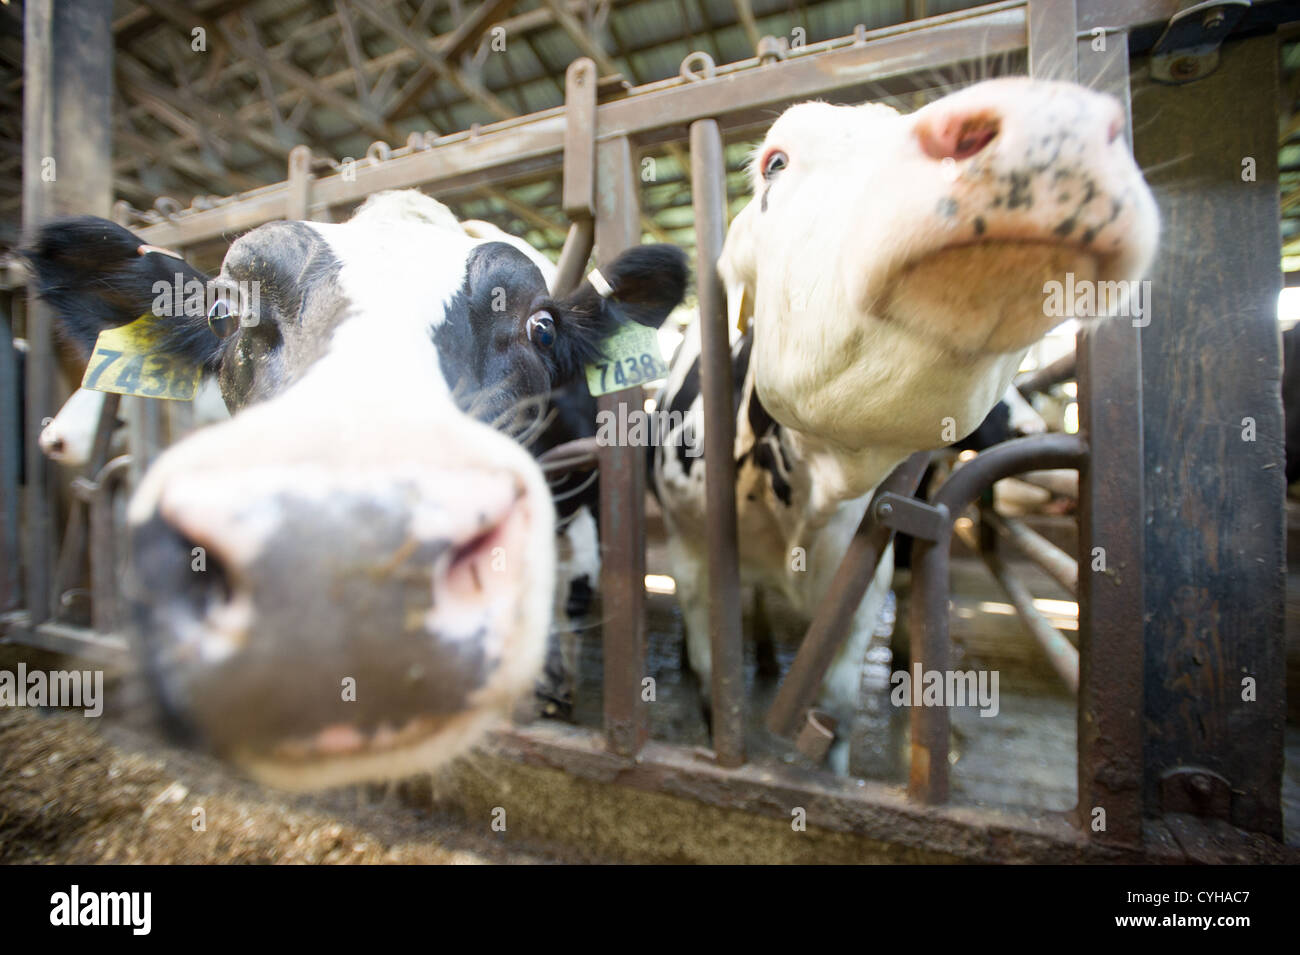 Vaches dans une étable à l'intérieur de grange Banque D'Images